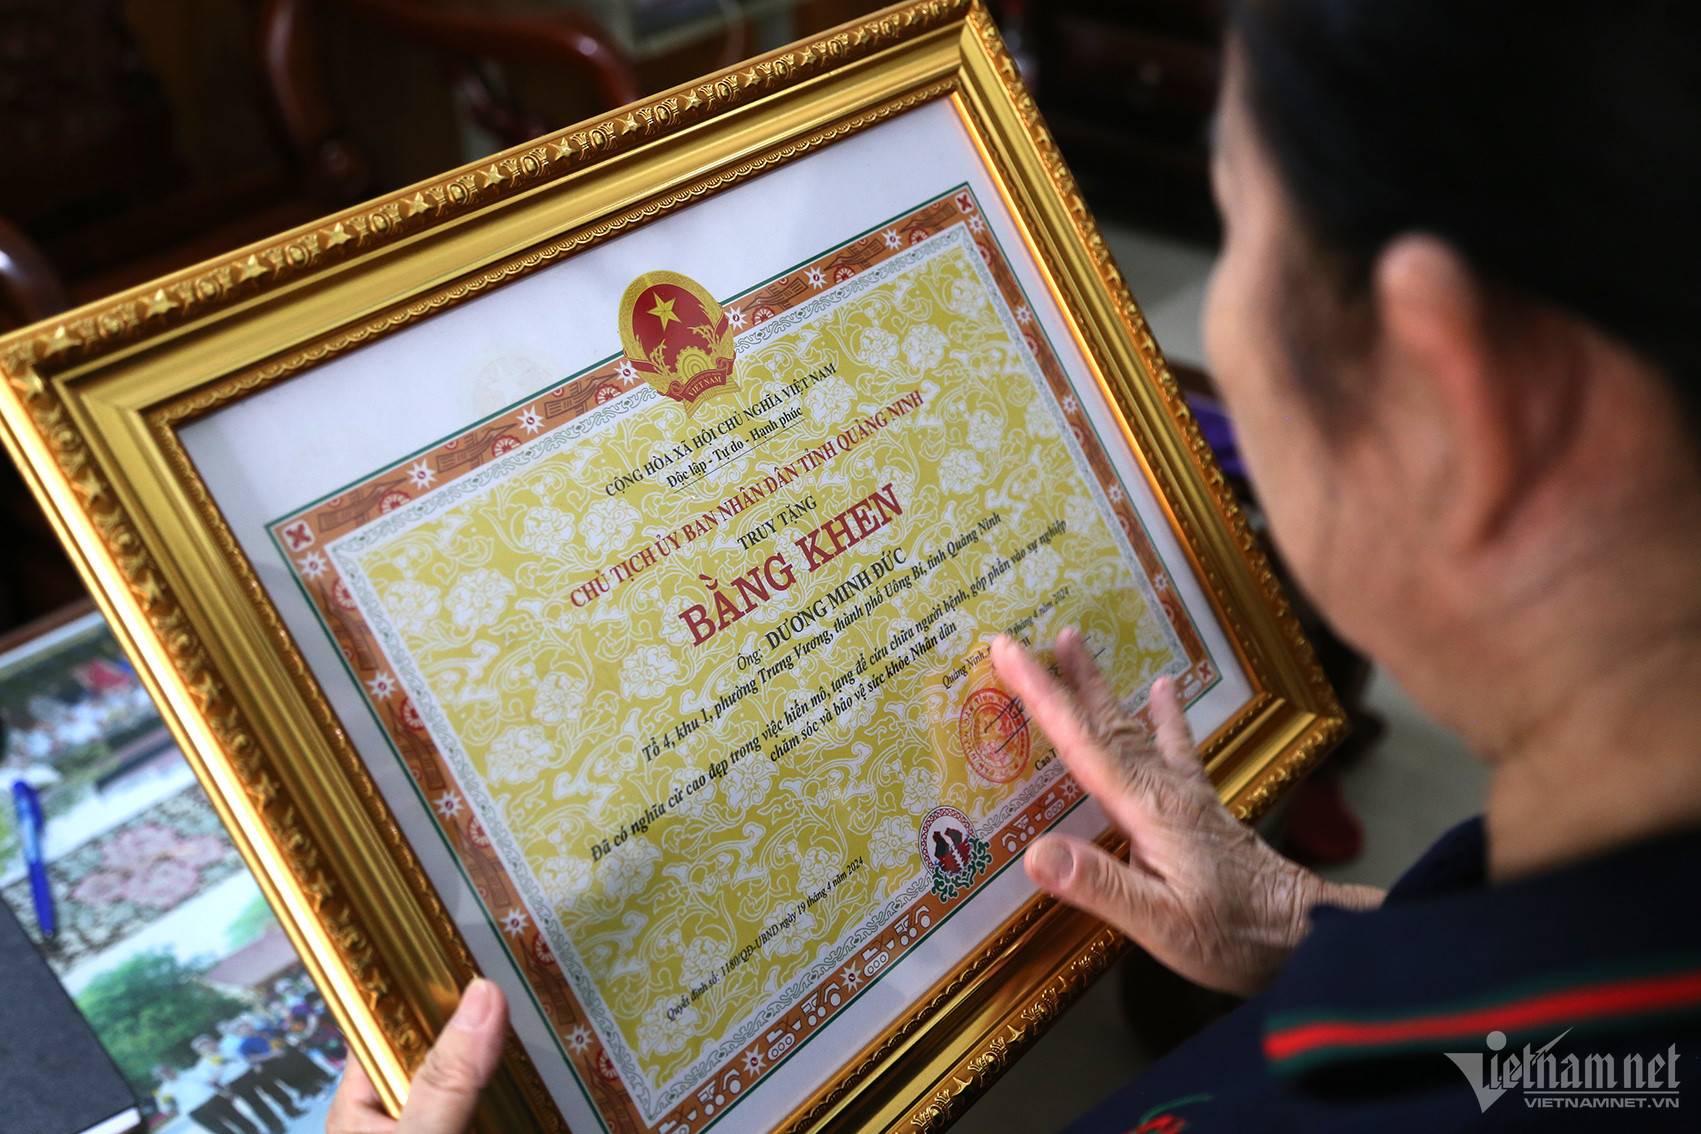 Nén nỗi đau trời thấu, người mẹ ở Quảng Ninh có quyết định cứu được 7 người-4